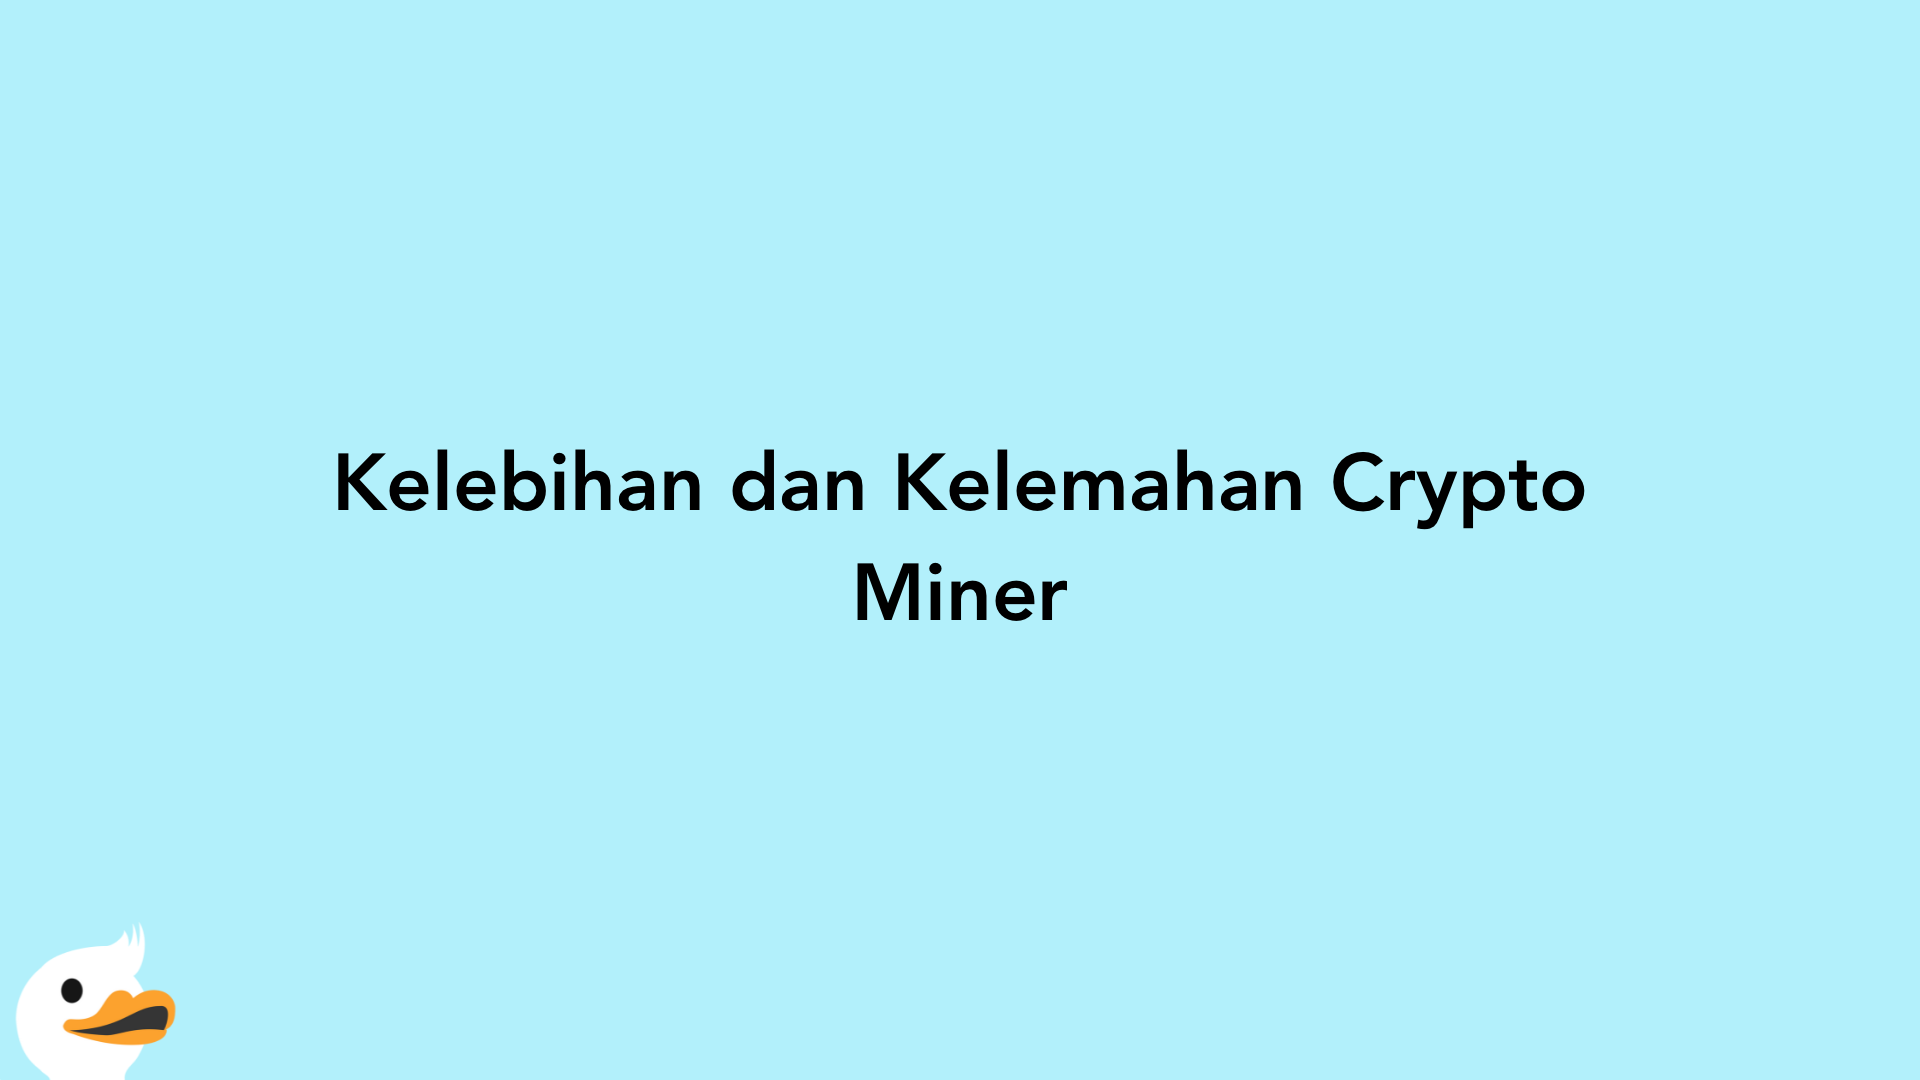 Kelebihan dan Kelemahan Crypto Miner